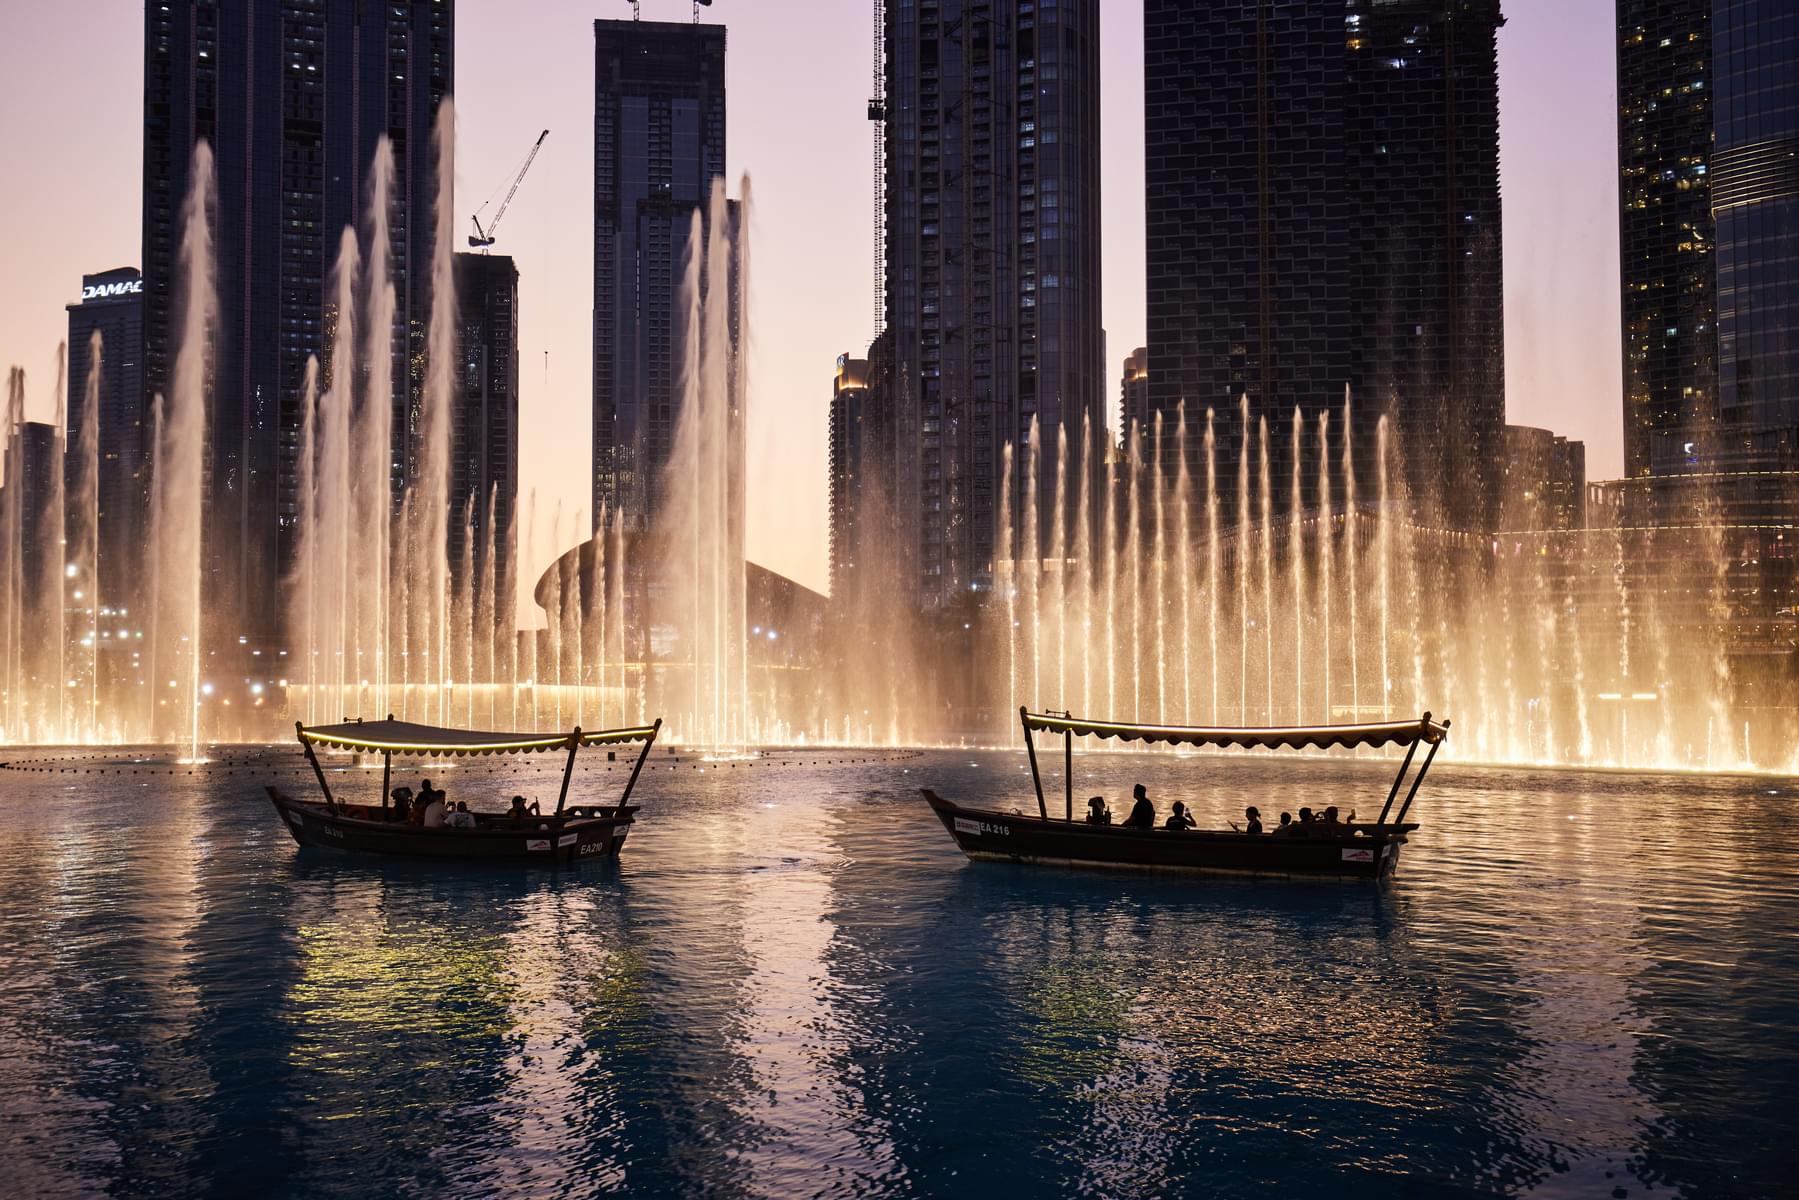 How to Get to Dubai Frame from Dubai Fountain